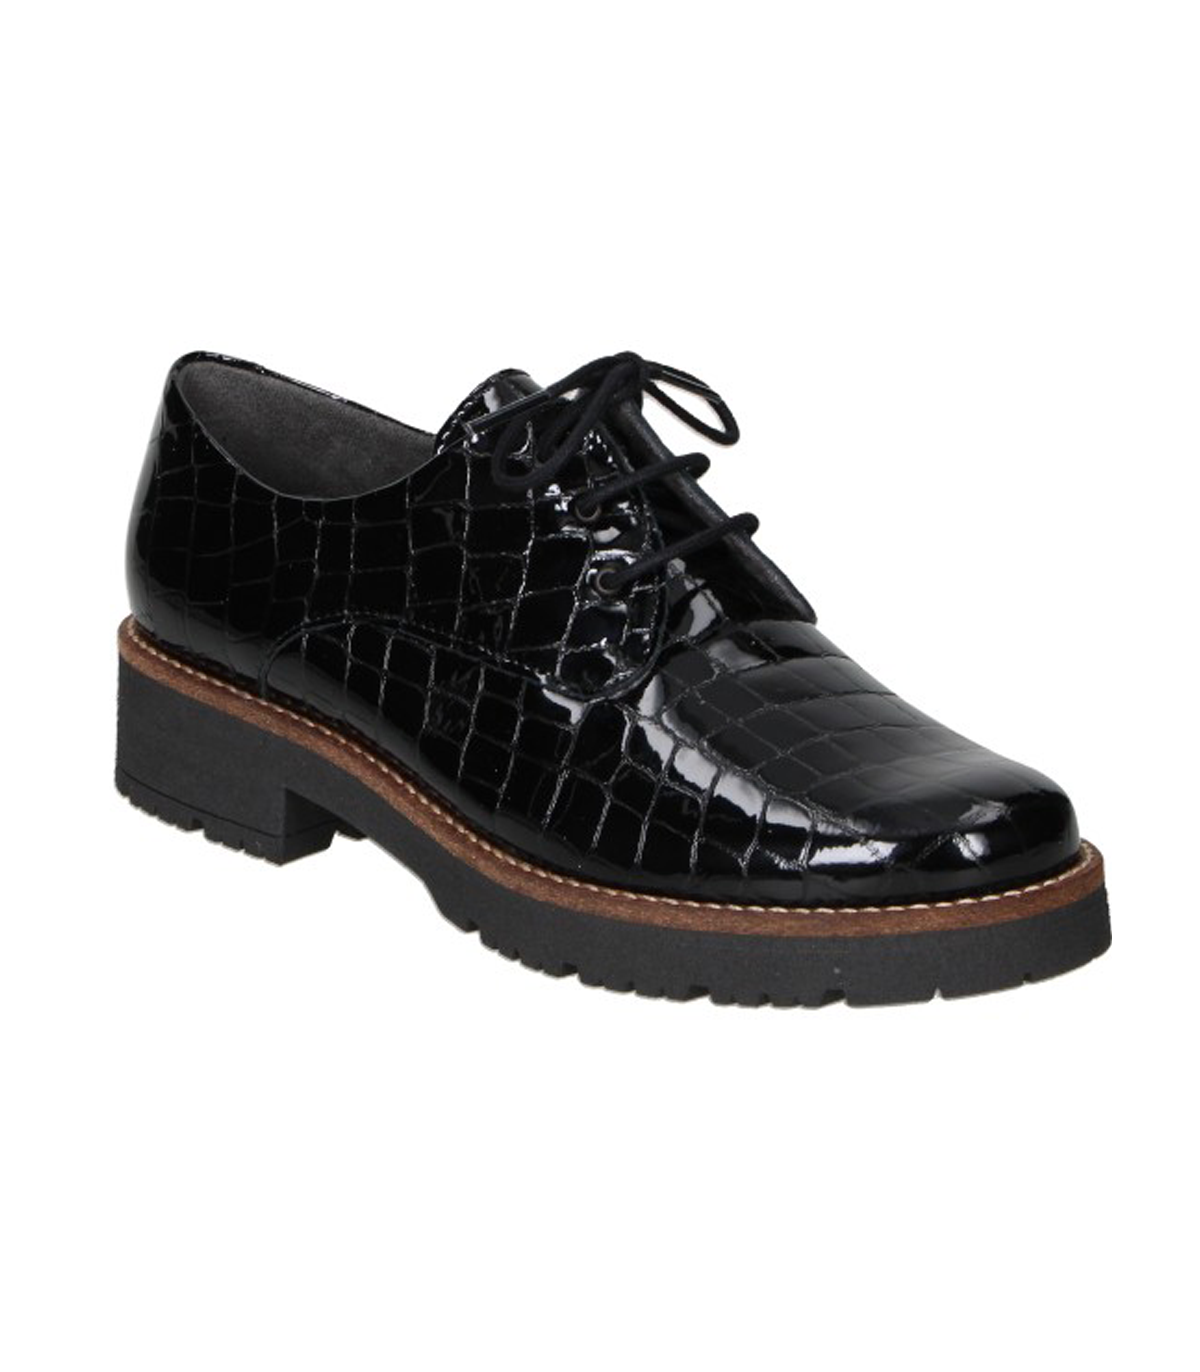 Zapatos negros Pitillos 5370 para mujer online en MEGACALZADO